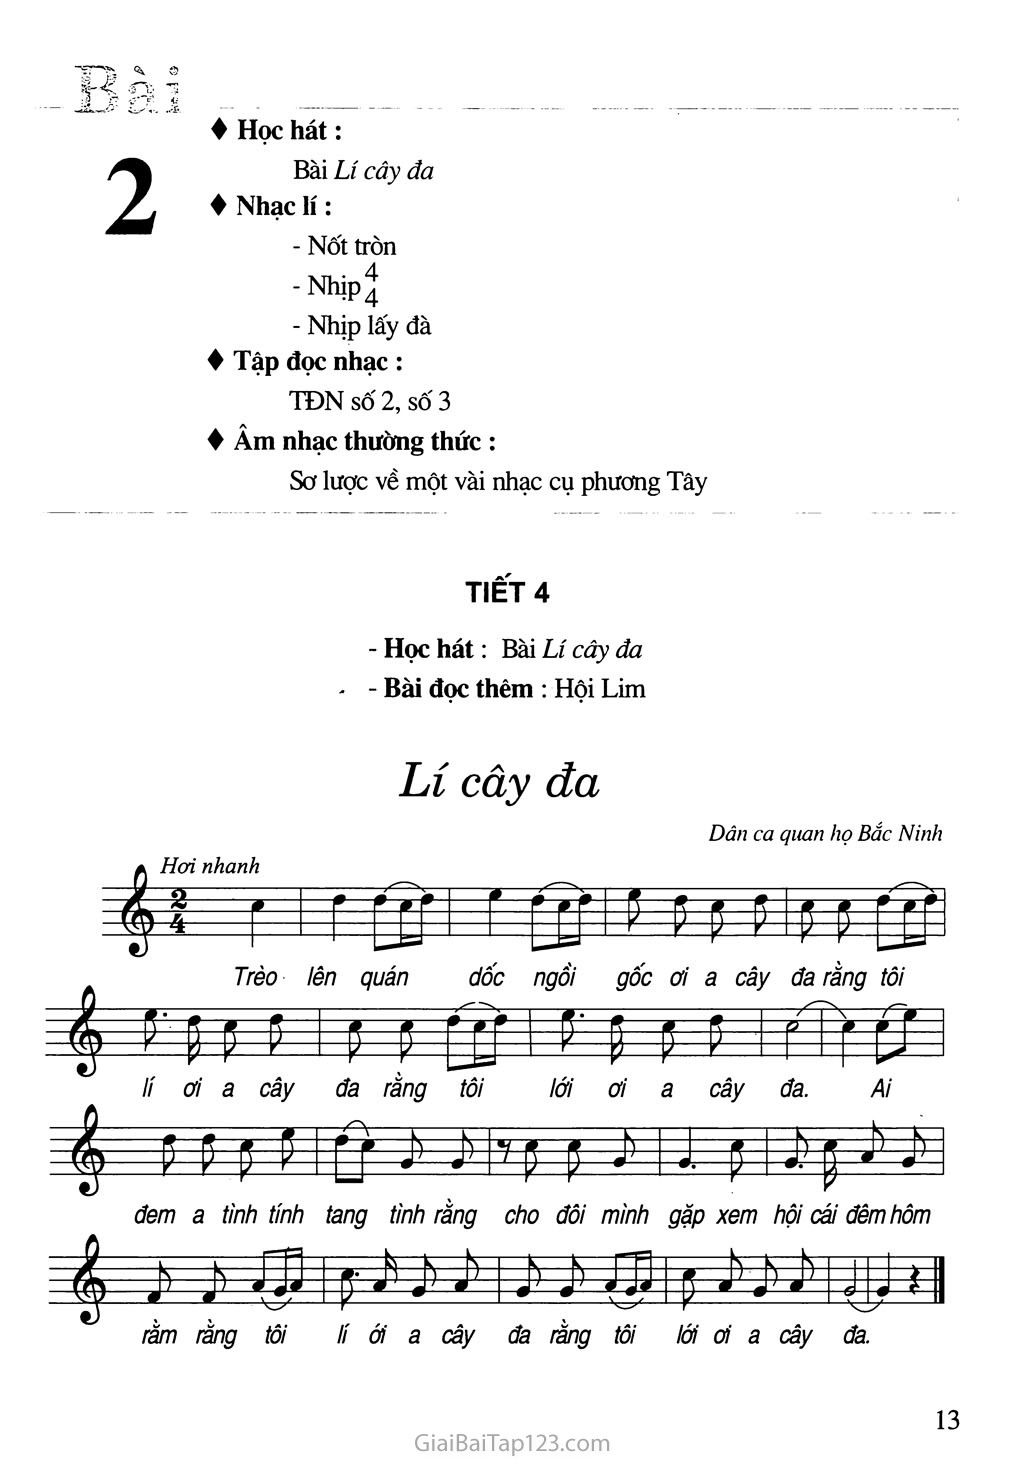 Tiết 4. Học hát: Bài Lí cây đa - Bài đọc thêm: Hội Lim trang 1